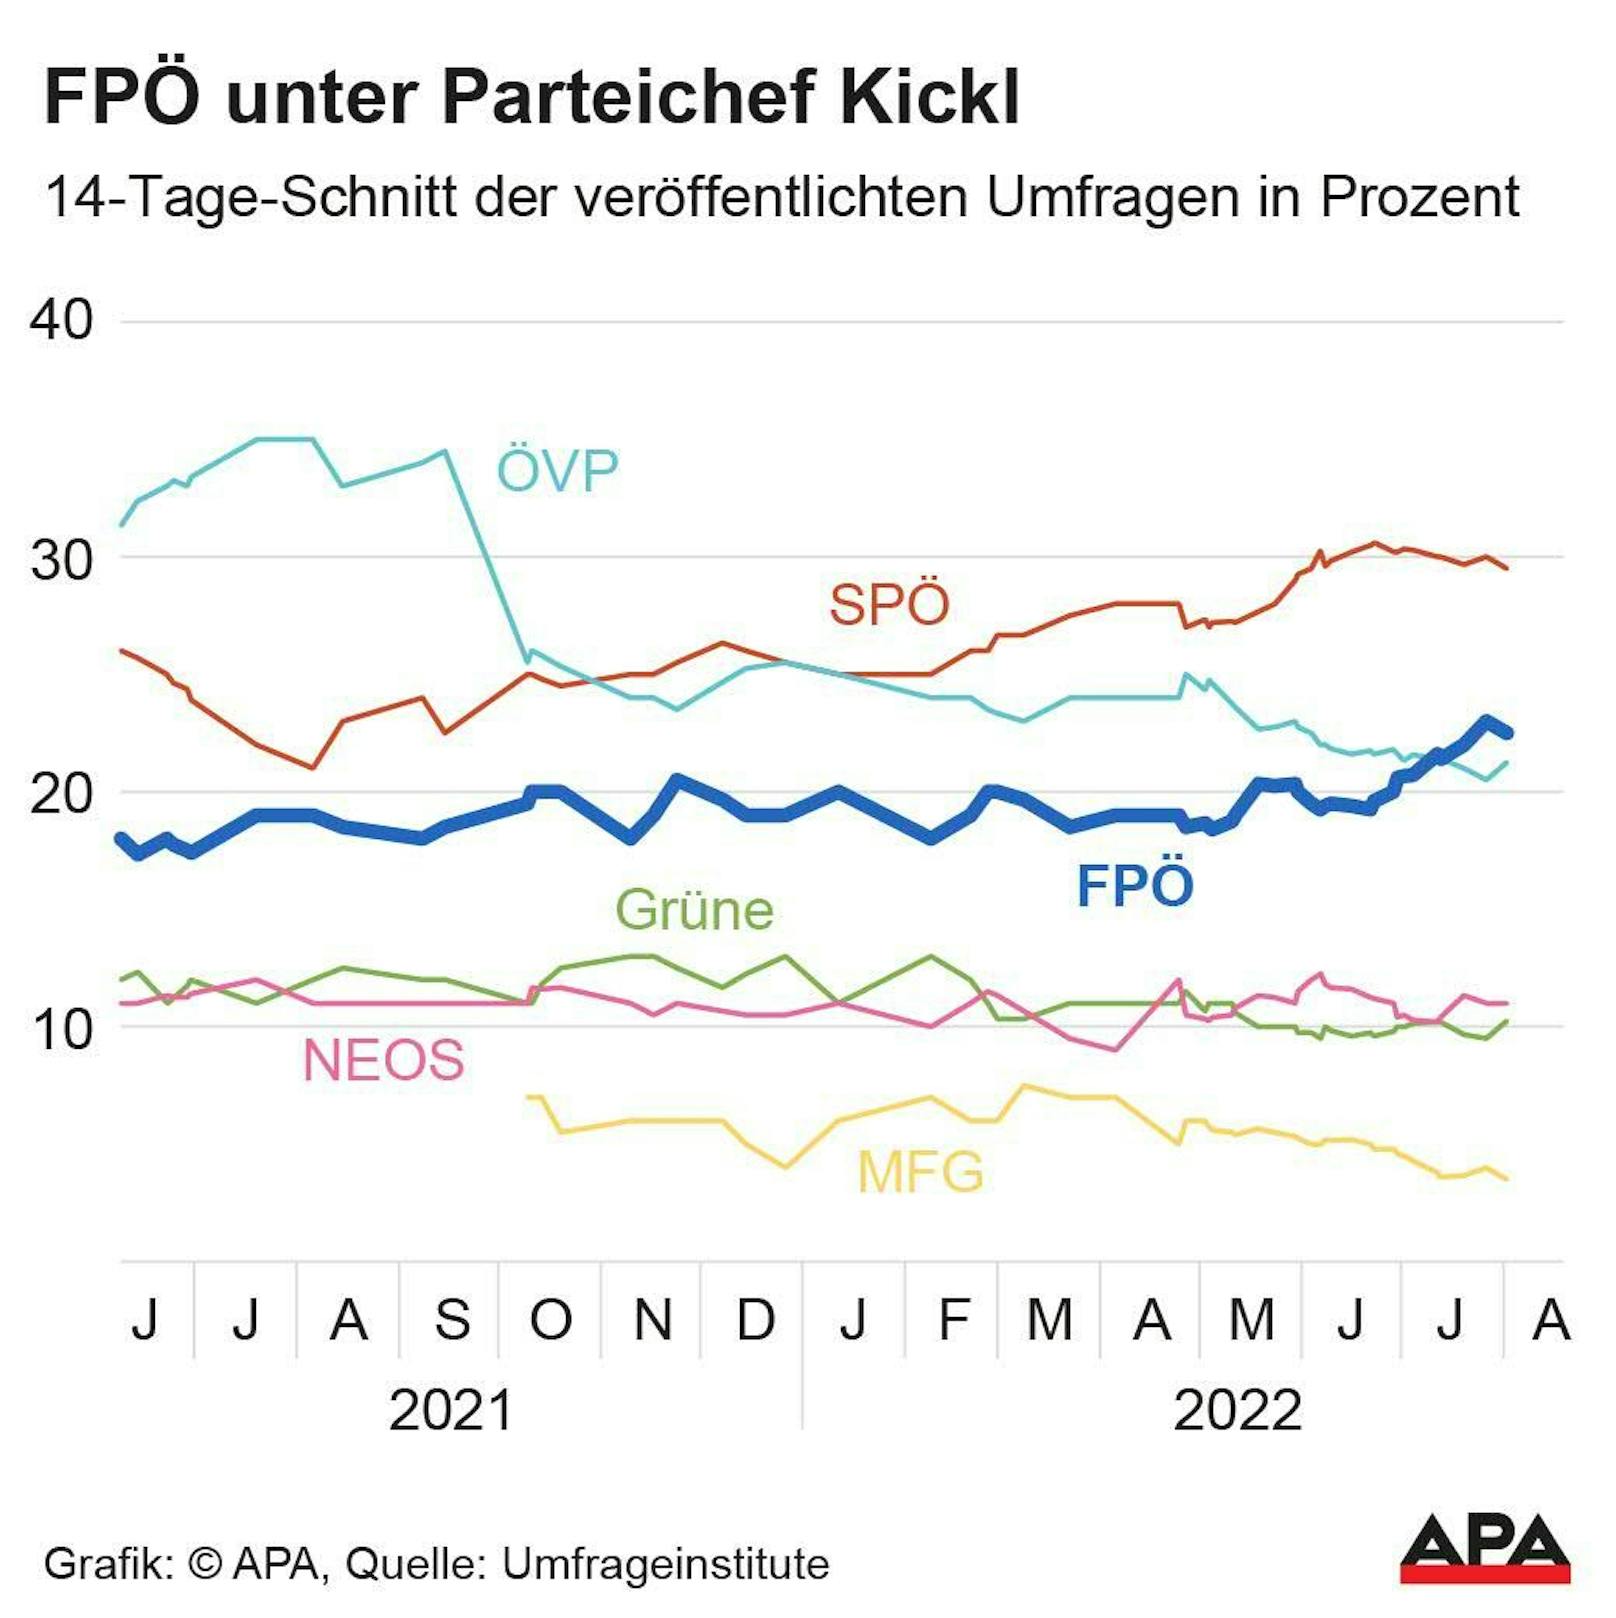 FPÖ unter Parteichef Kickl.